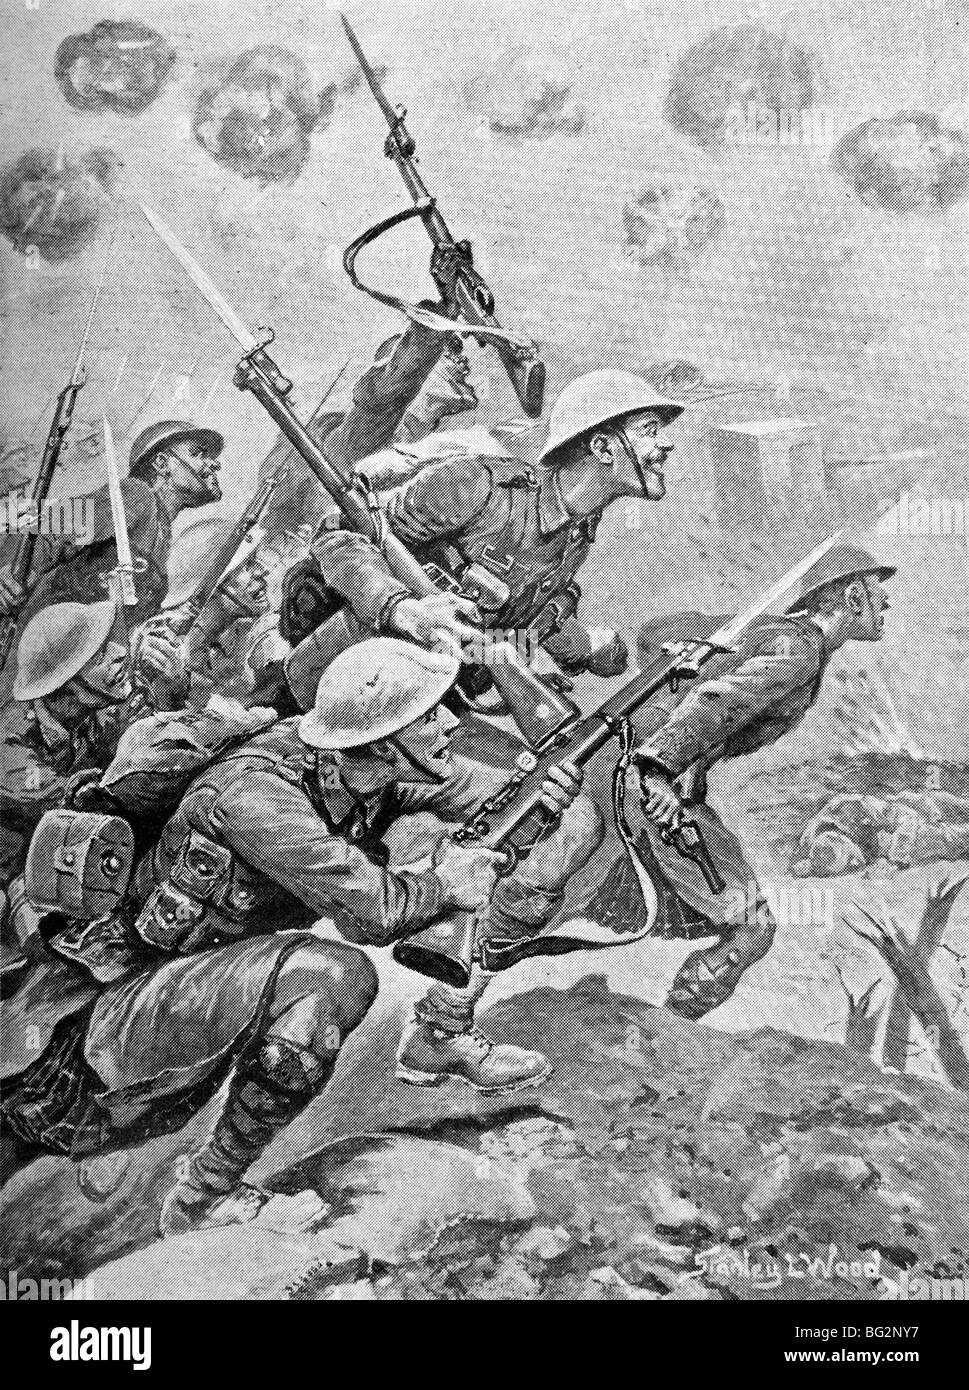 WW1 illustration contemporaine de troupes écossaises passe au cours de la 'top' pour attaquer les lignes ennemies en France en 1917. Banque D'Images